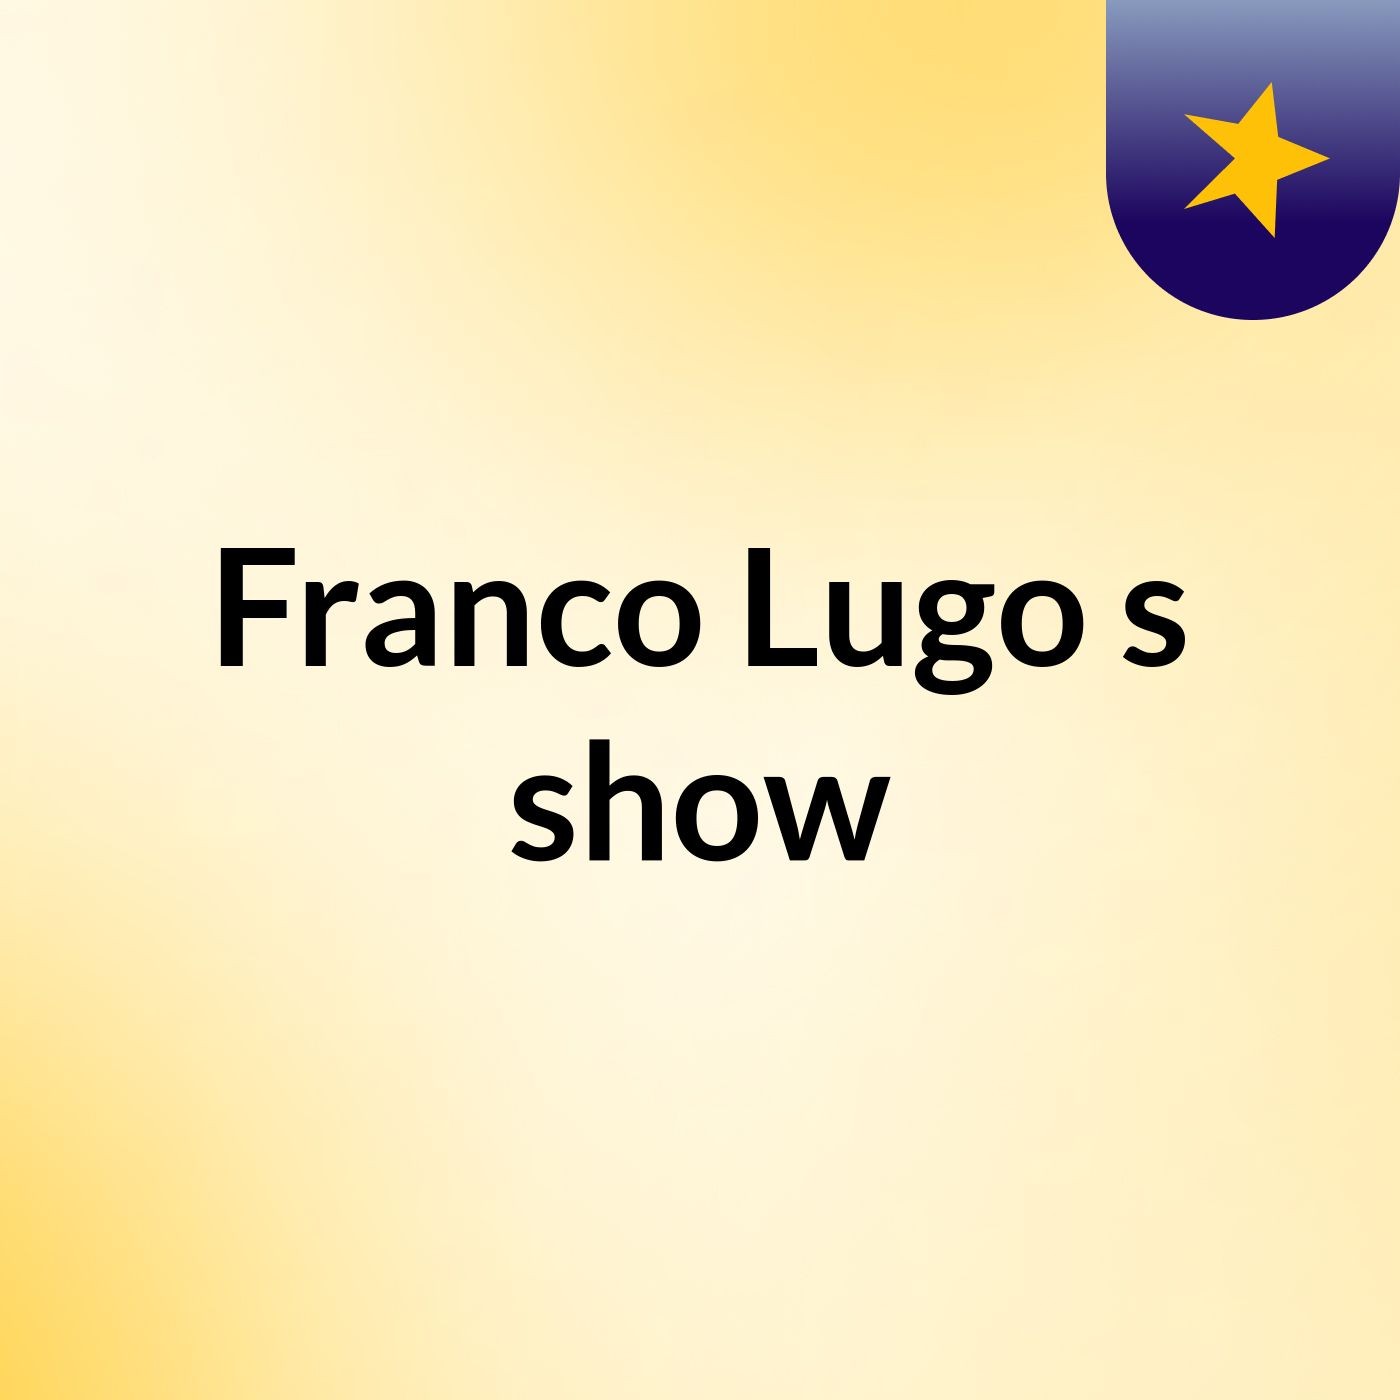 Franco Lugo's show